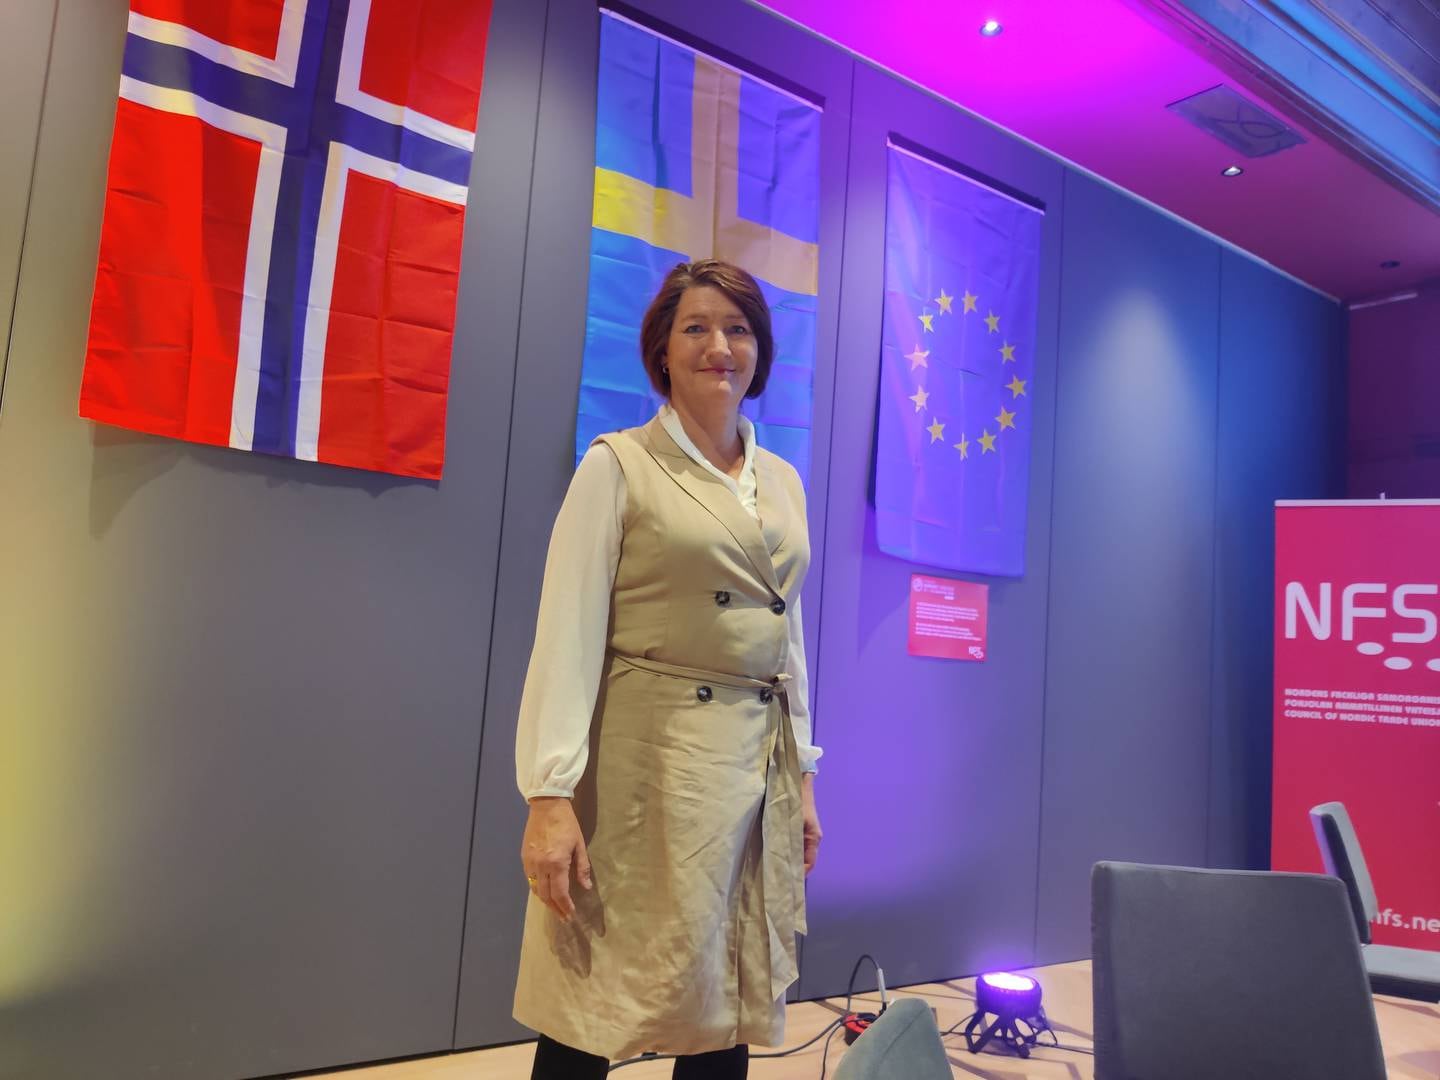 Den svenske LO-lederen Susanna Gideonsson besøkte Oslo denne uka.